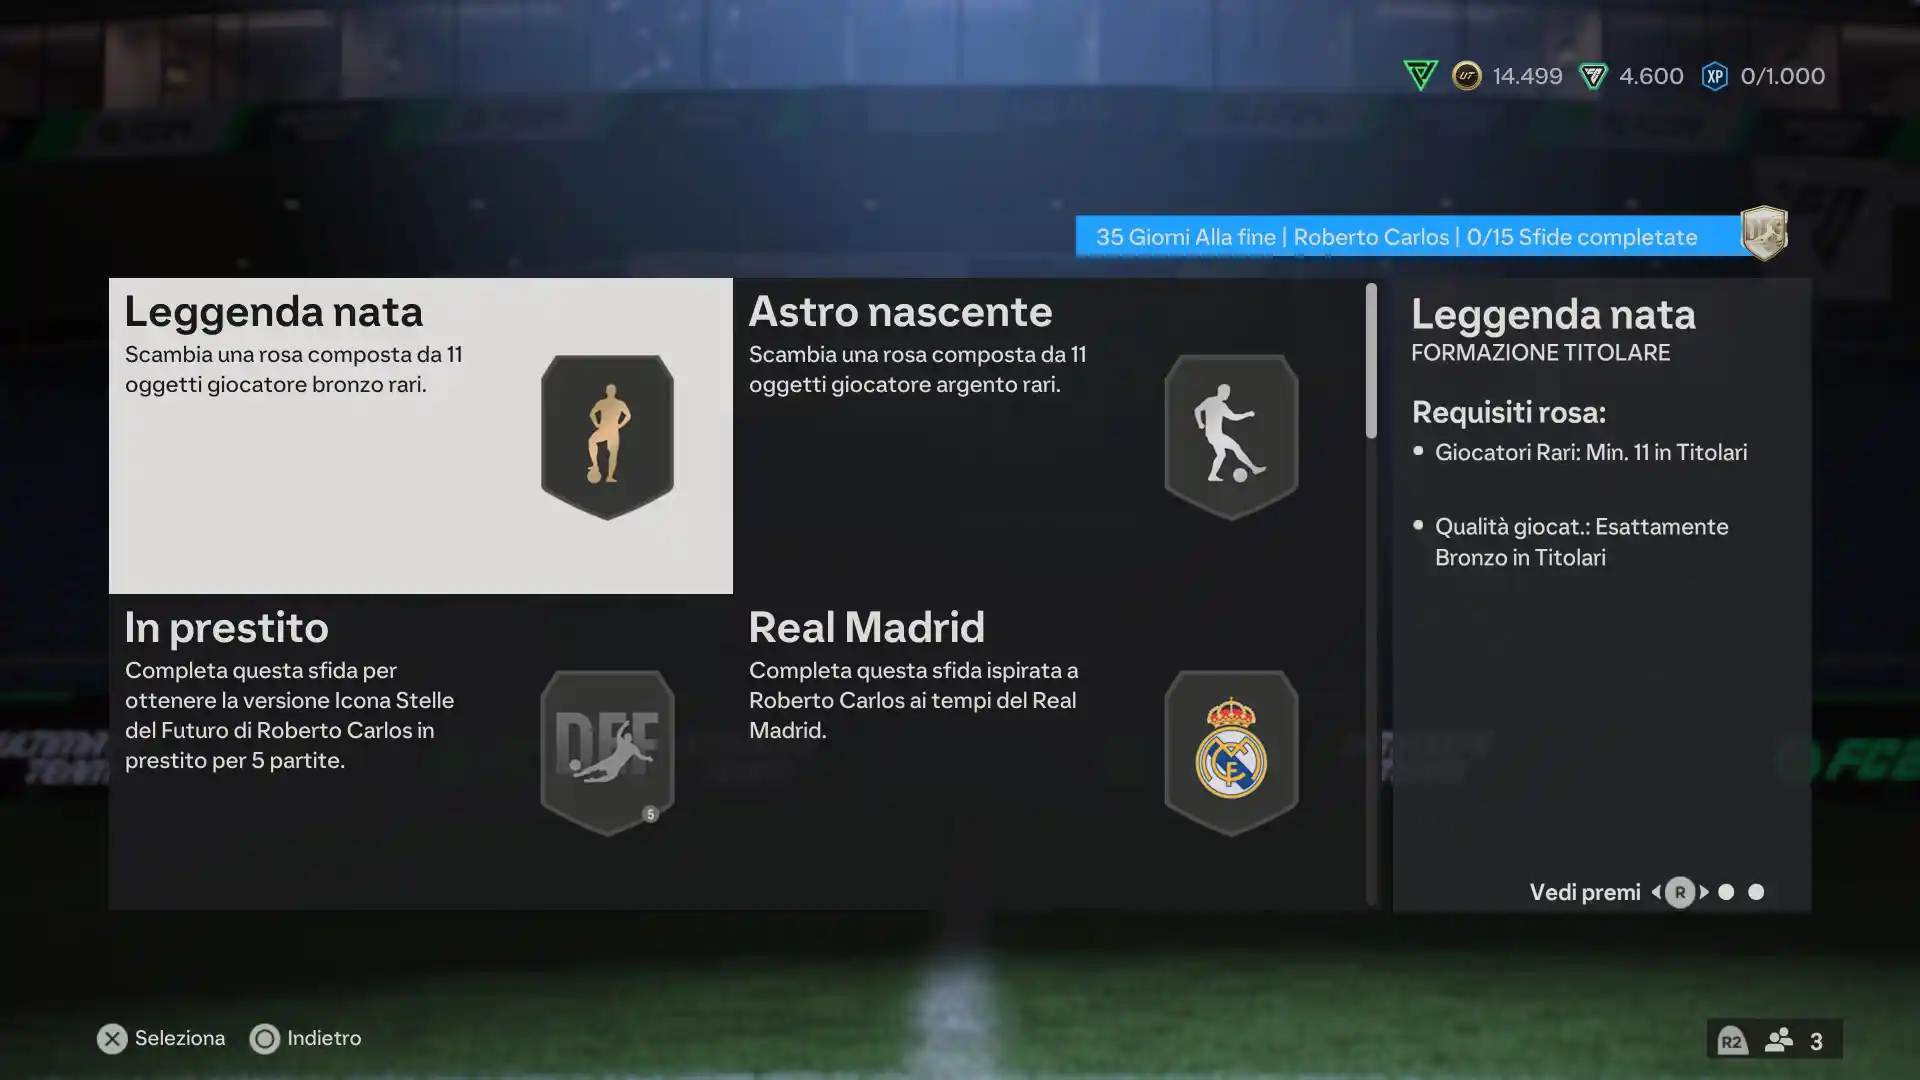 EA FC 24 Ultimate Team: come ottenere Roberto Carlos Icona Future Stars 92 - soluzioni SBC